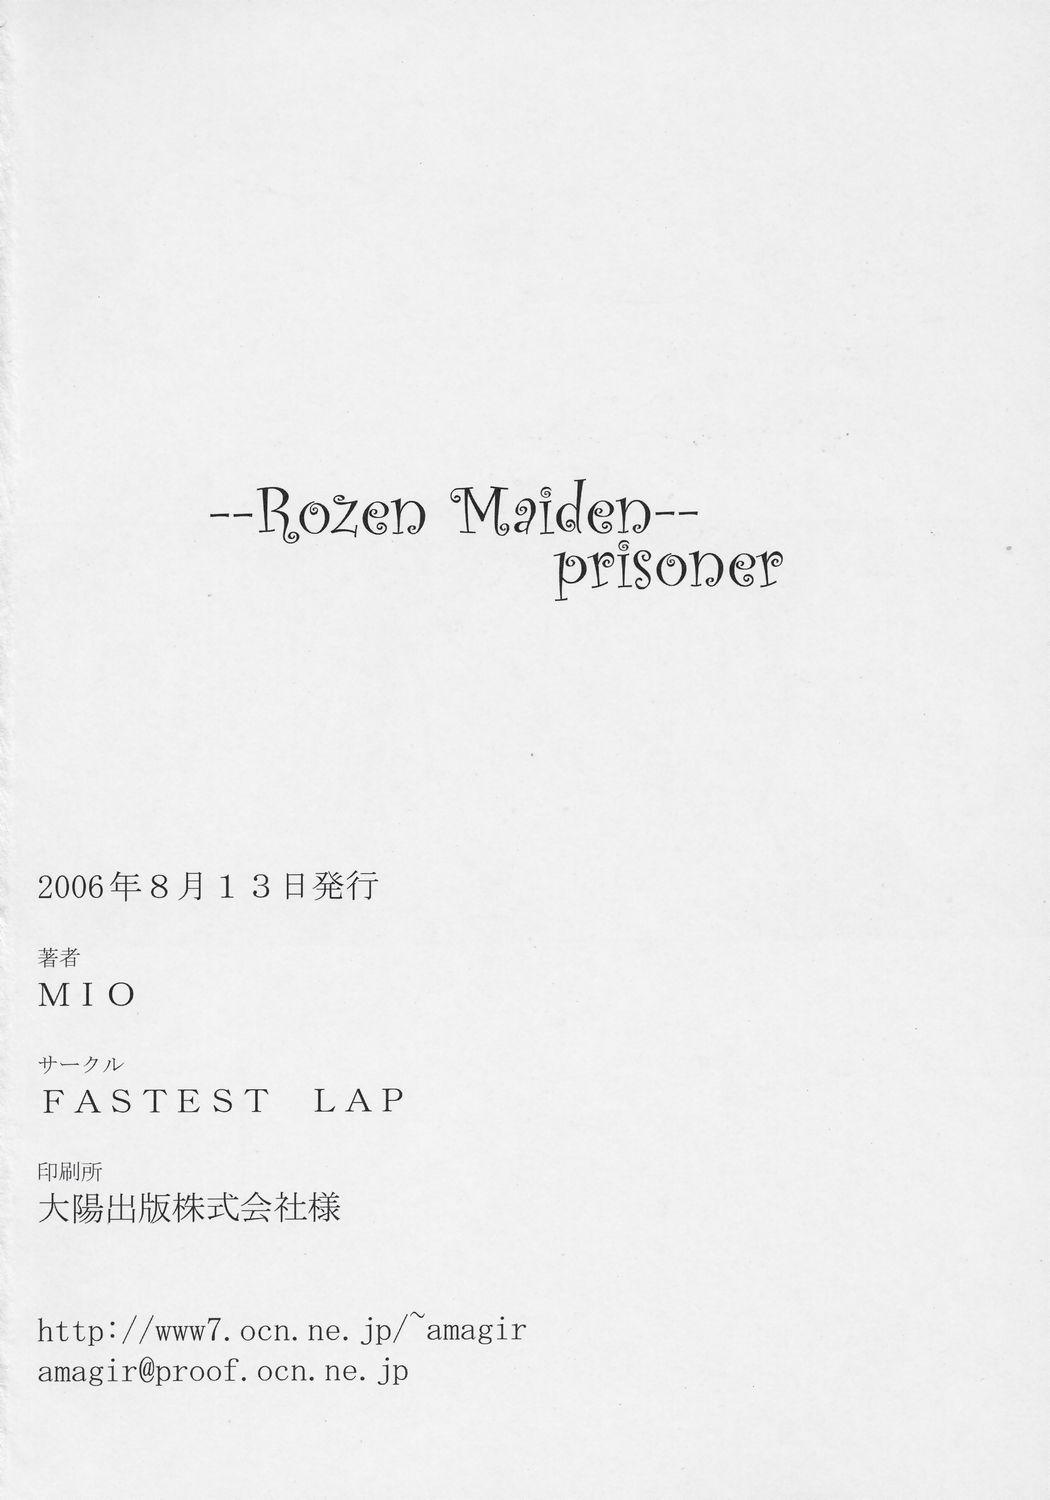 prisoner 20